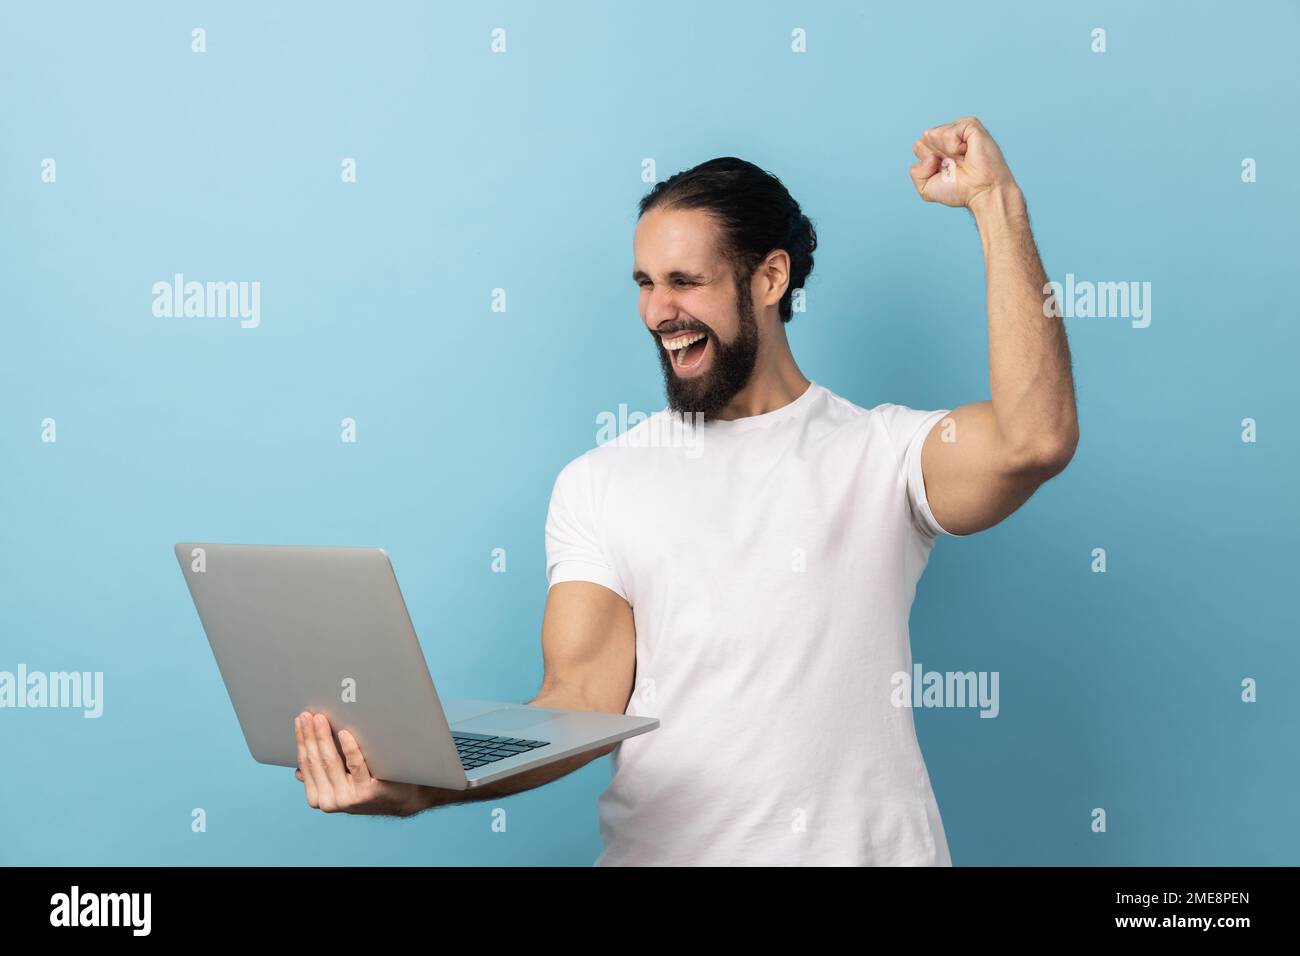 Portrait d'un homme réussi avec une barbe portant un T-shirt blanc criant avec joie et tenant un ordinateur portable, réjouissant la victoire, Paris en ligne. Studio d'intérieur isolé sur fond bleu. Banque D'Images